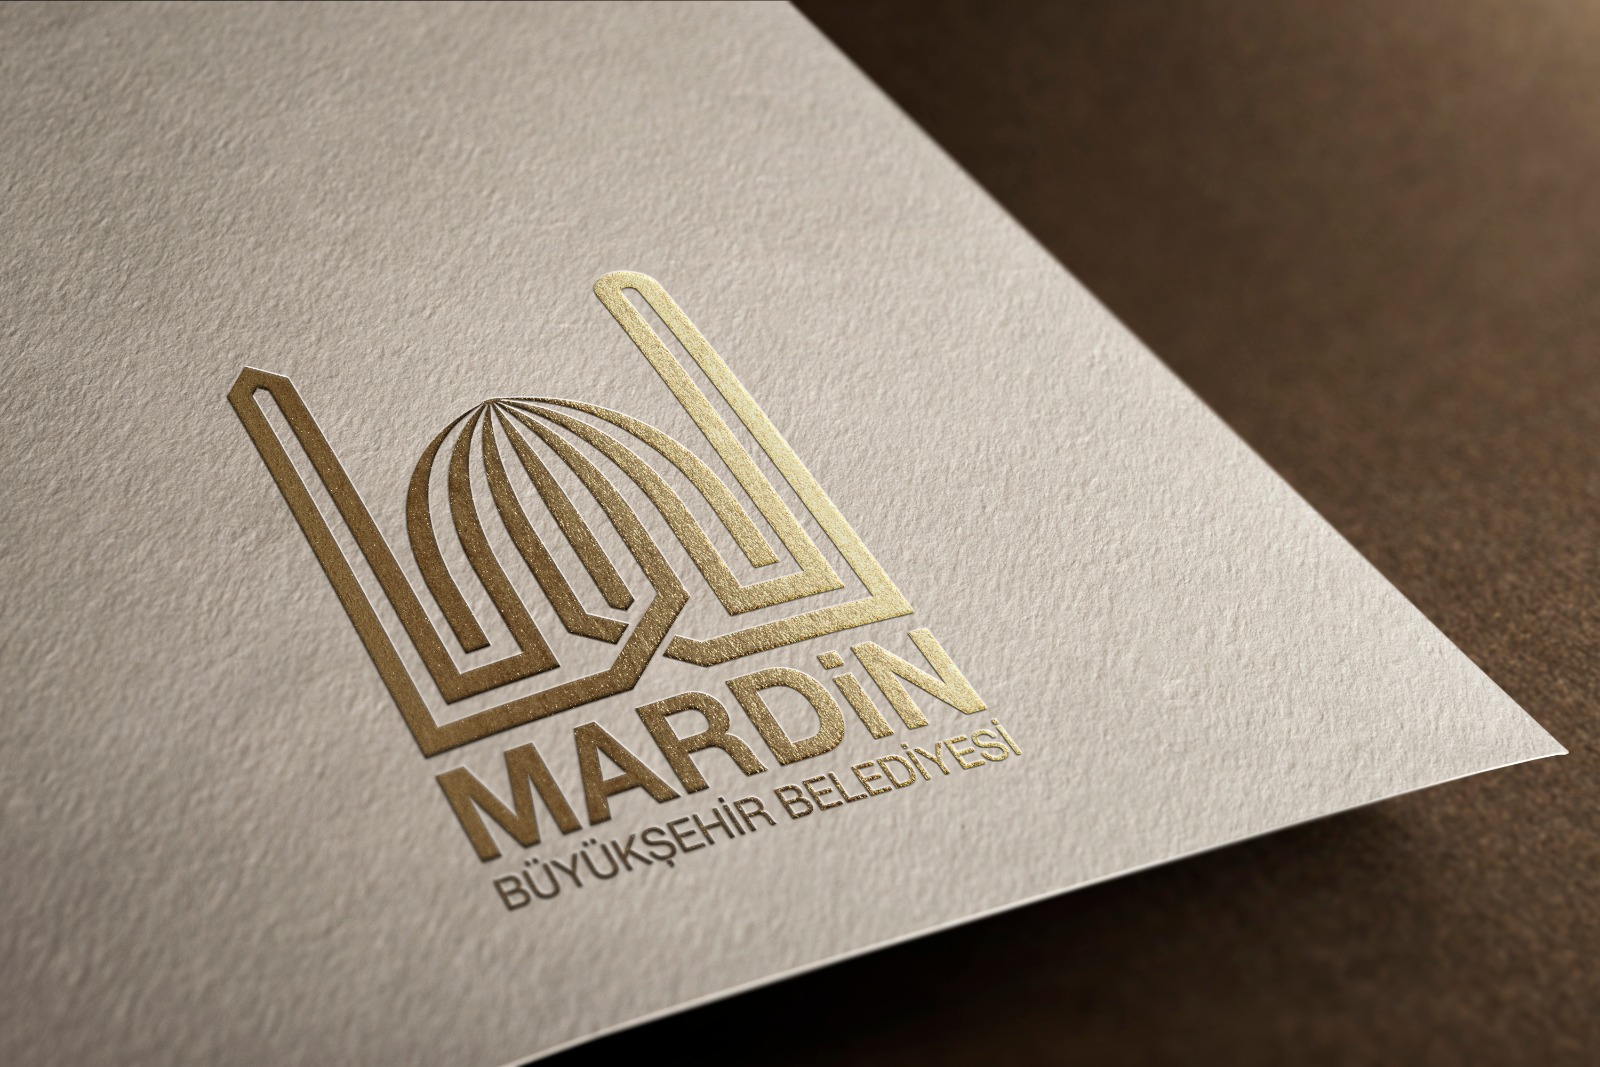 Mardin Büyükşehirin Logosunu Halk Seçti